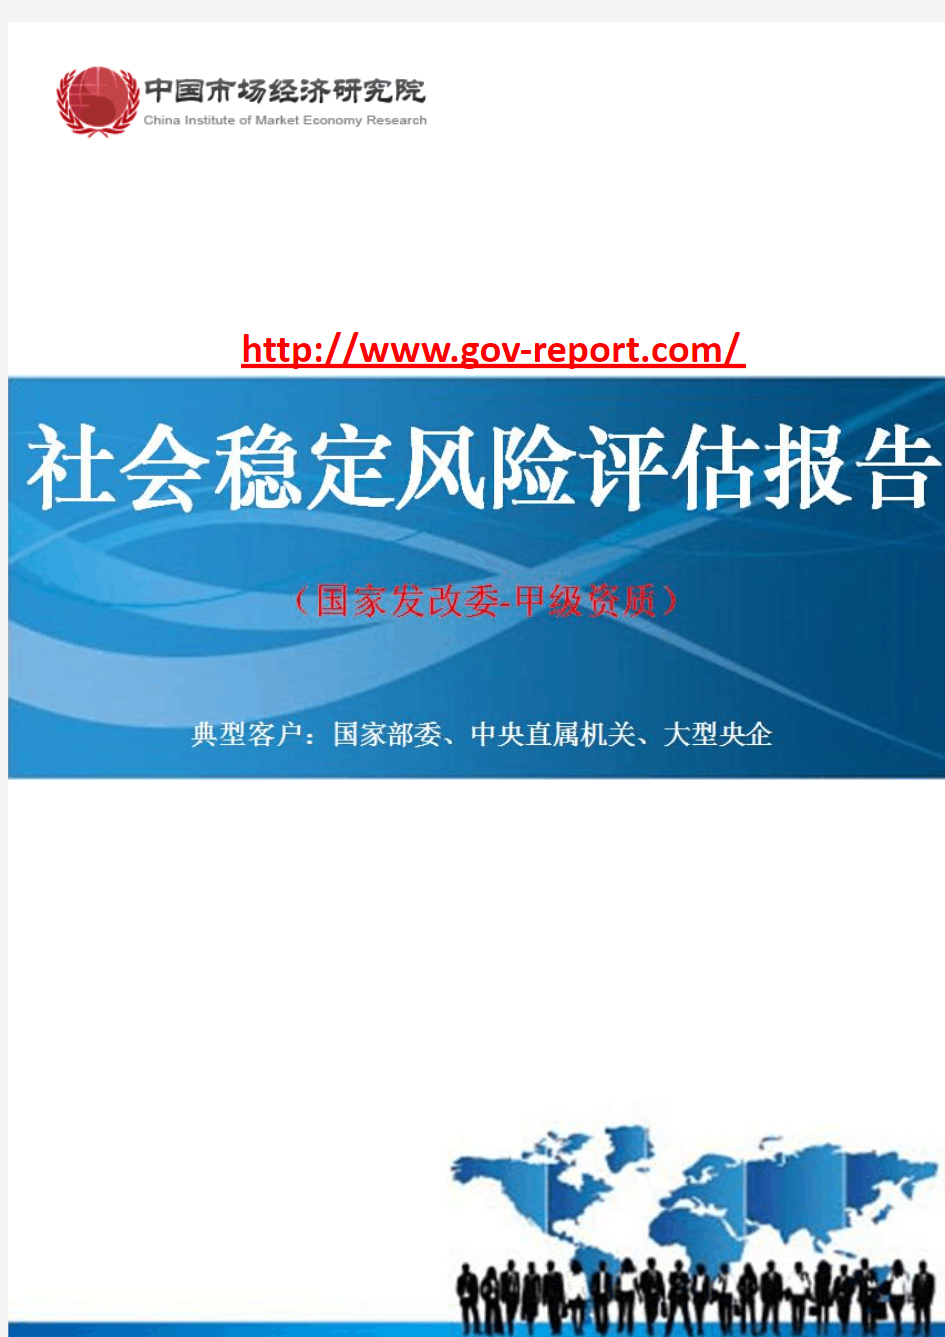 核电厂1、2号机组(选址阶段)项目社会稳定风险评估报告(中国市场经济研究院-工程咨询-甲级资质)